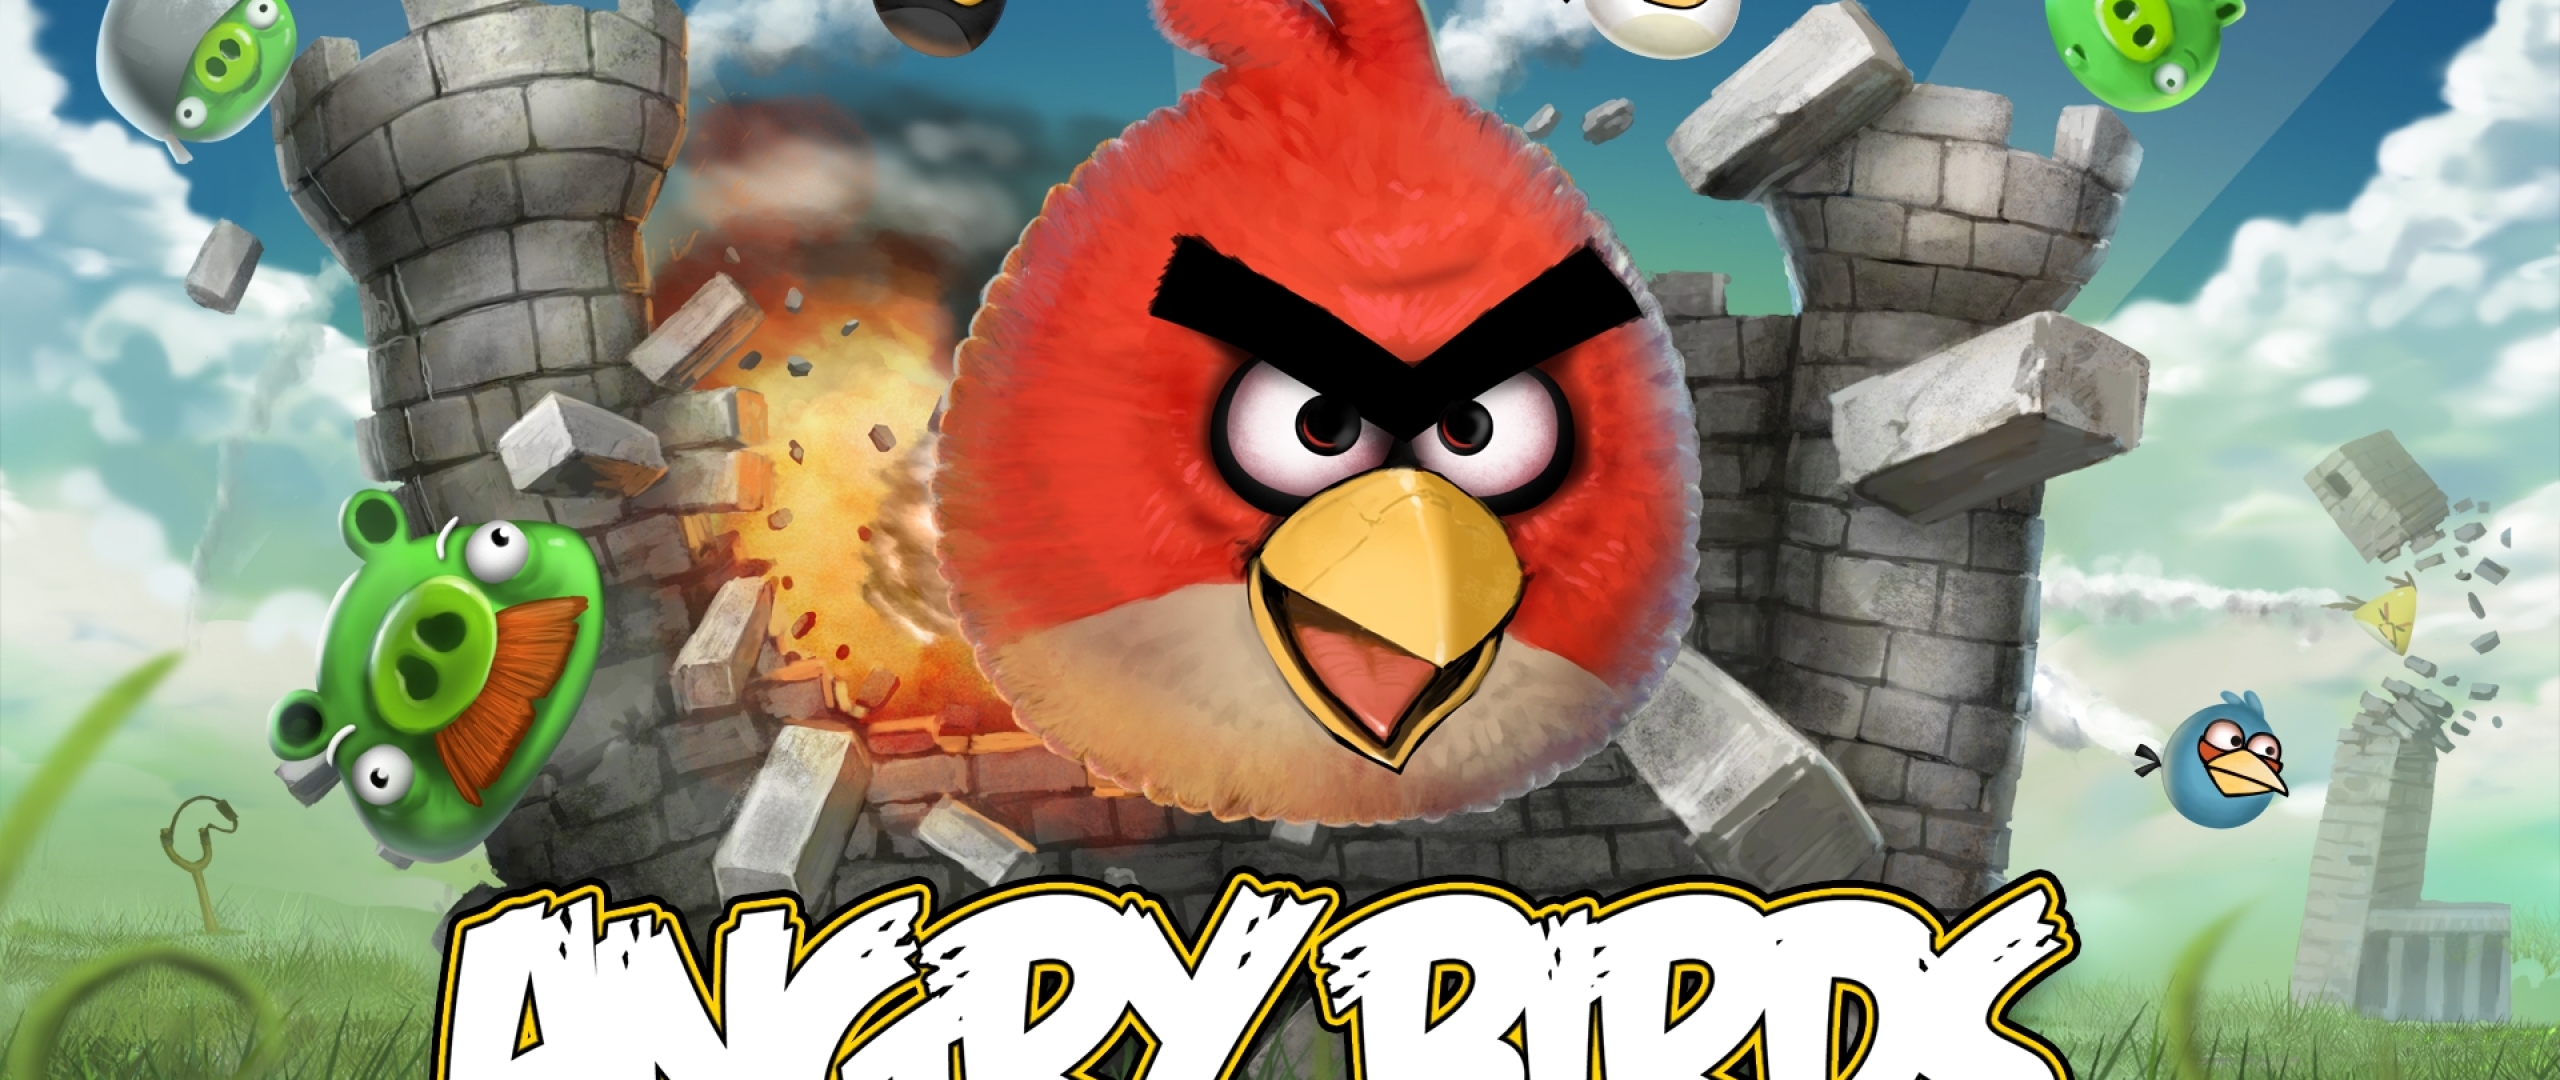 Angry birds versions. Angry Birds (игра). Angry Birds игры Rovio. Angry Birds версия 1.6.3. Энгри бердз игра первая версия.